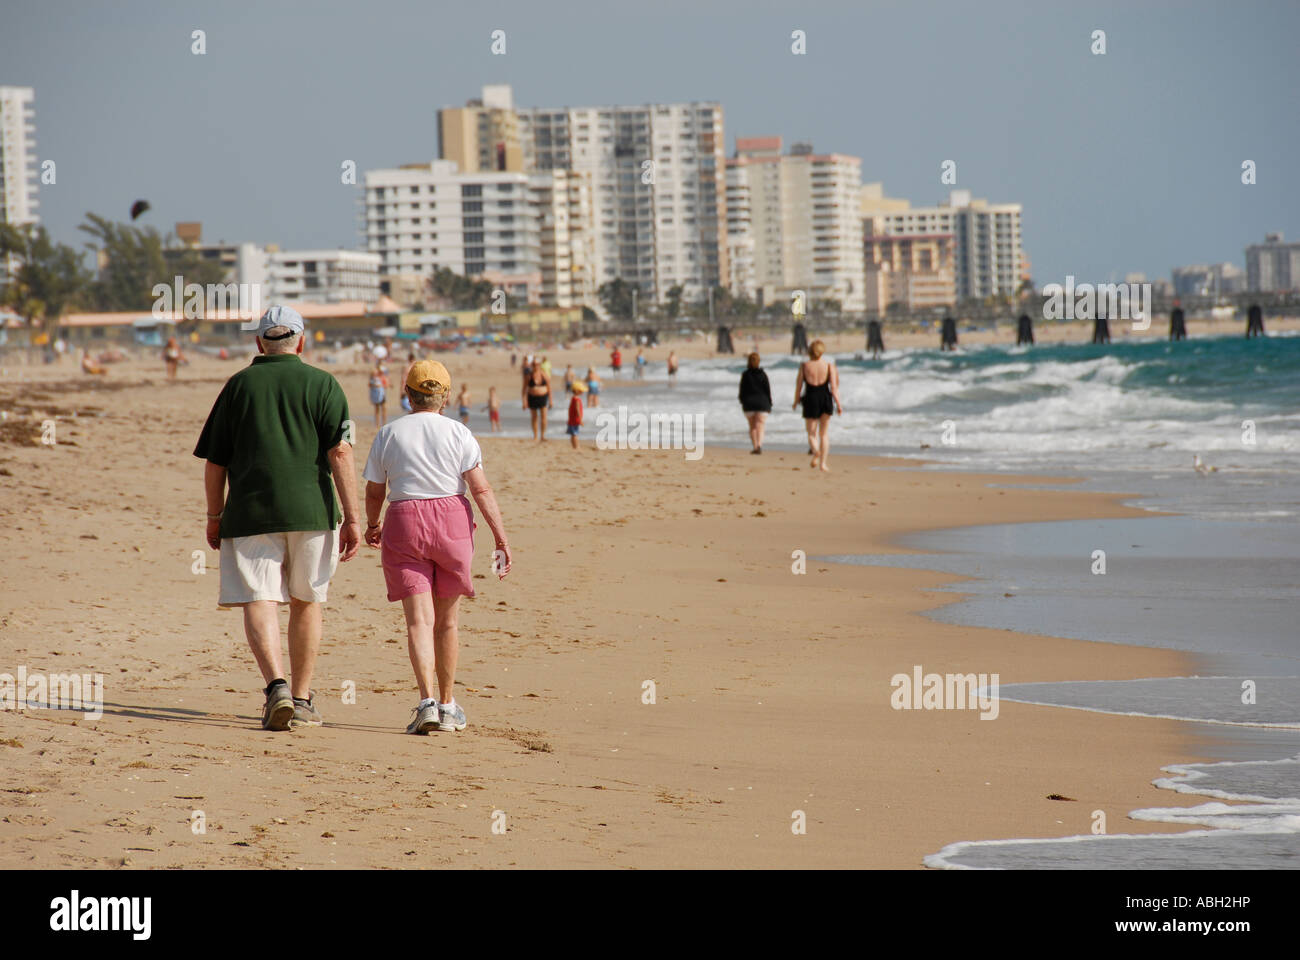 Older couple walking on beach Stock Photo